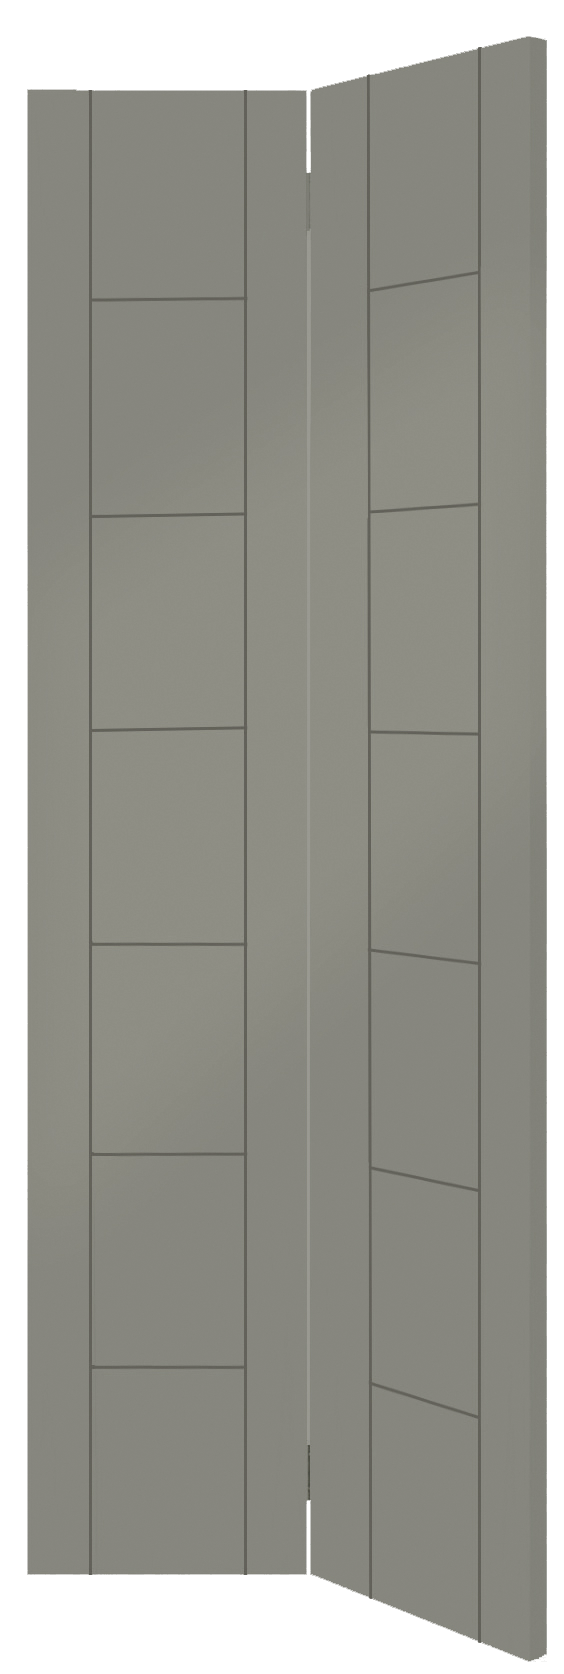 Palermo Internal White Primed Bi-Fold Door – Slate, 1981 x 762 x 35 mm